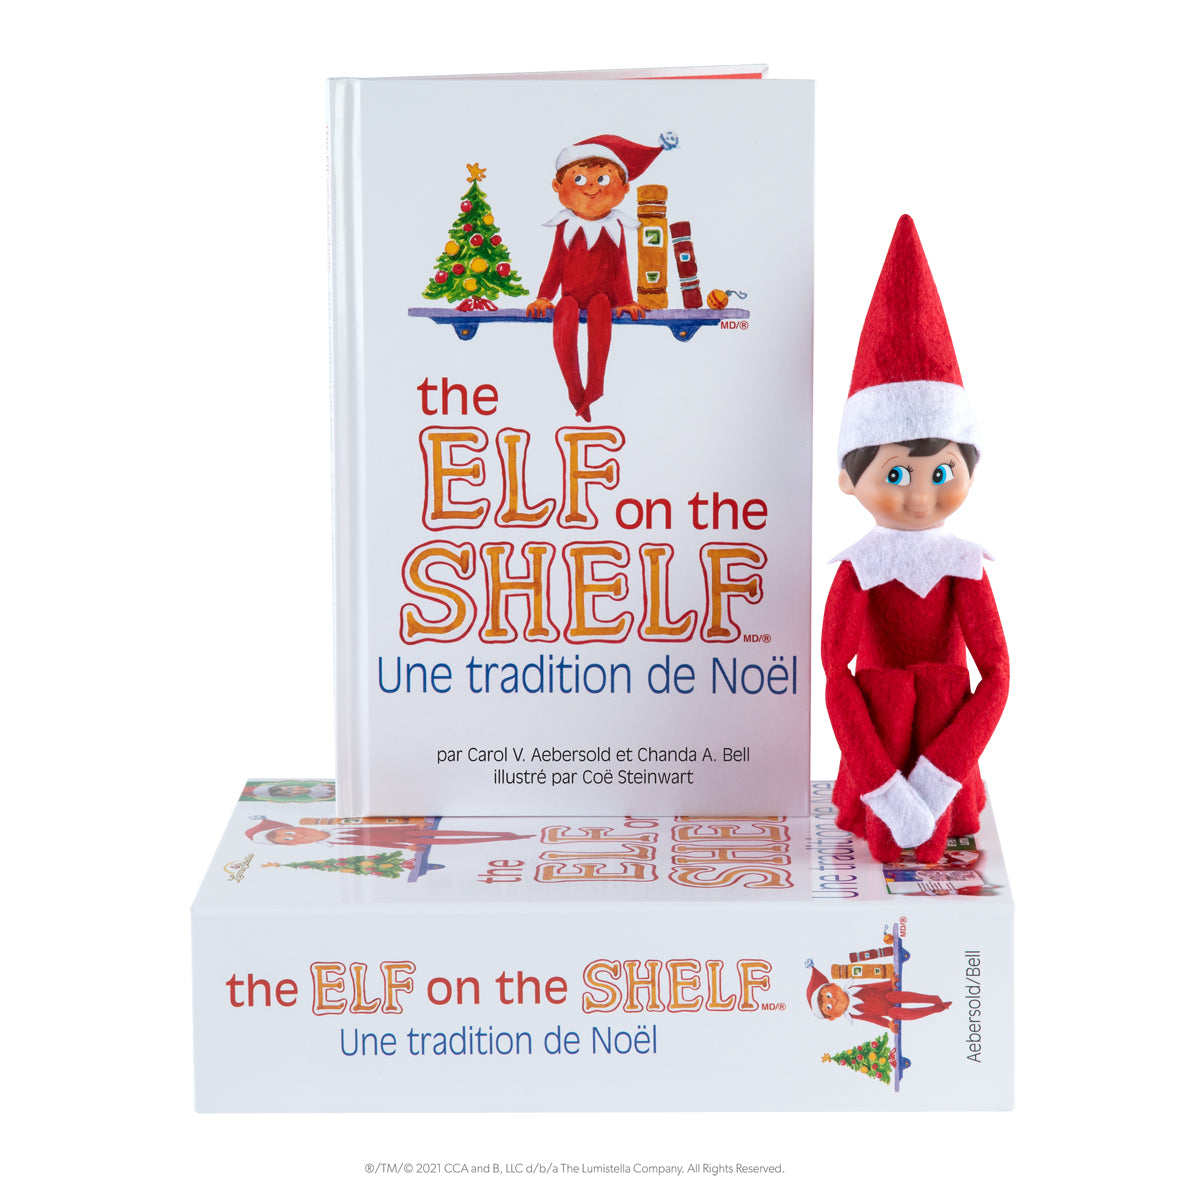 Elf on the shelf | Jongen | Nederlandstalig